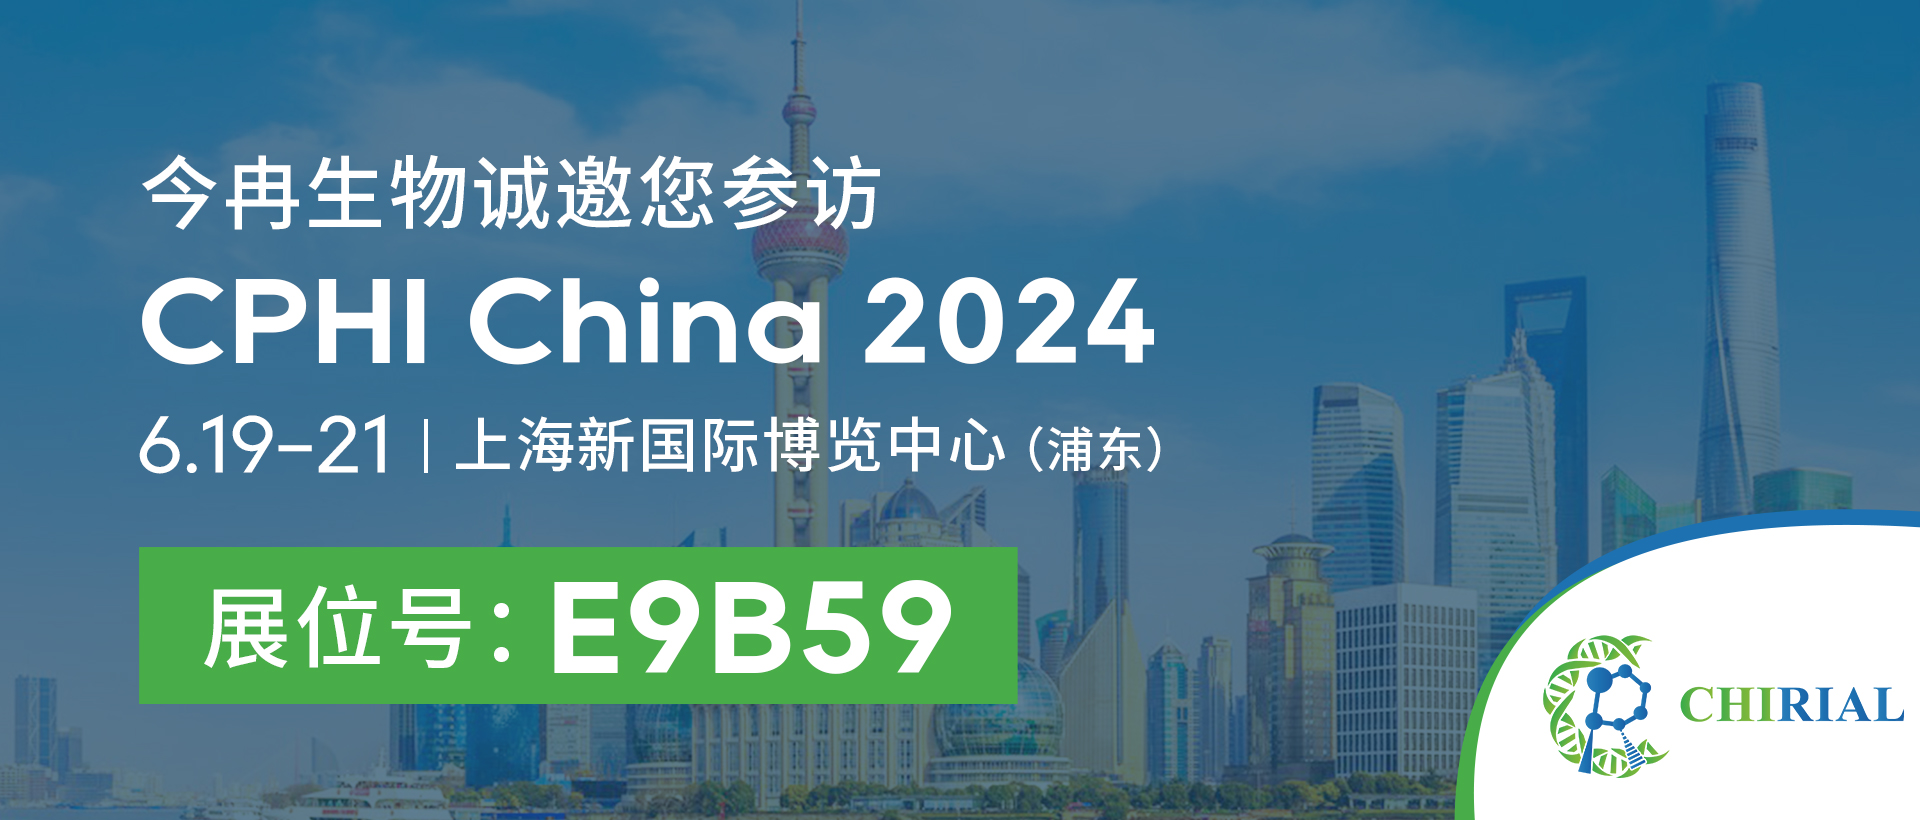 2024 CPHI 전시회 중국 공식 웹사이트 초대 포스터